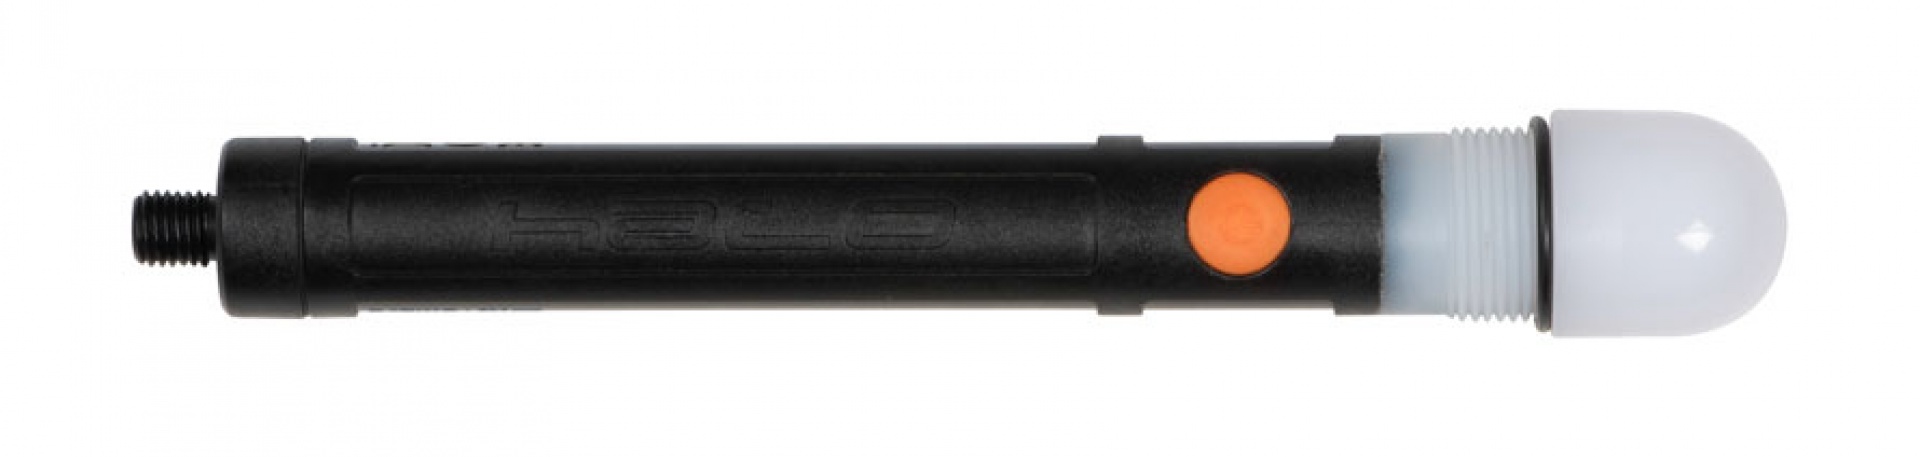 Fox LS Marker Pole Kit inc. Bag